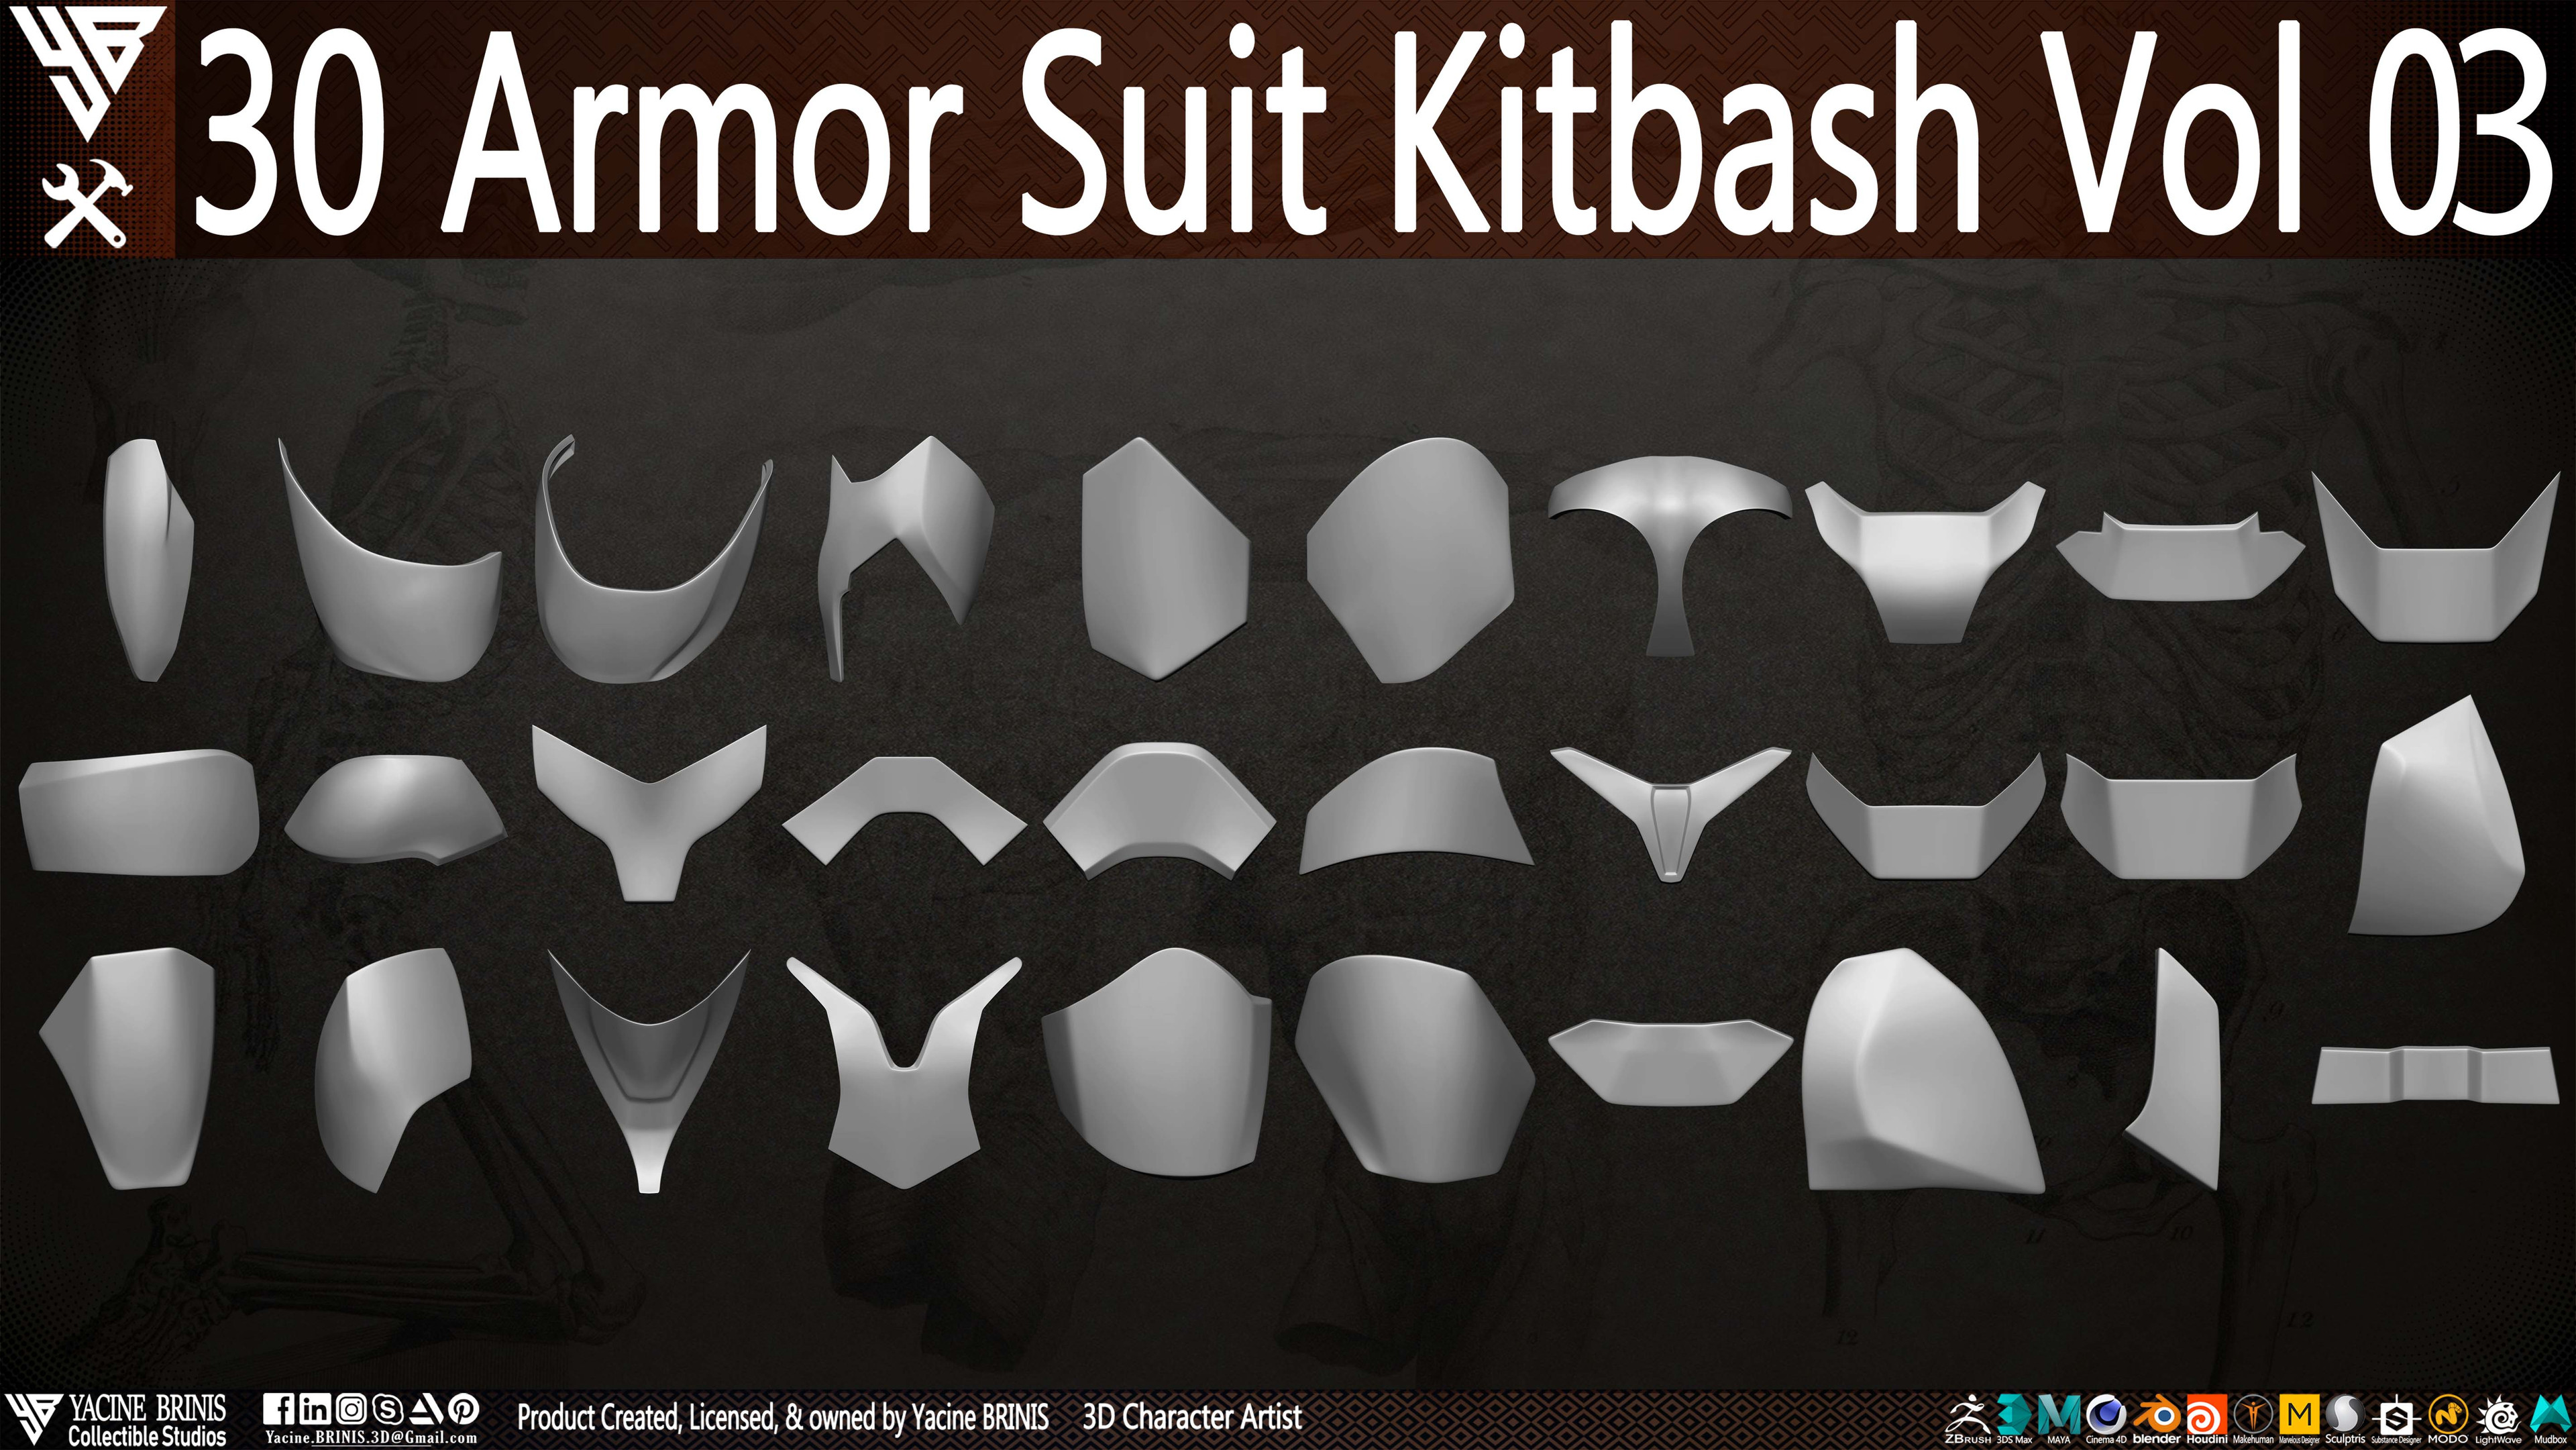 30 Armor Suit Kitbash By Yacine BRINIS Set 011